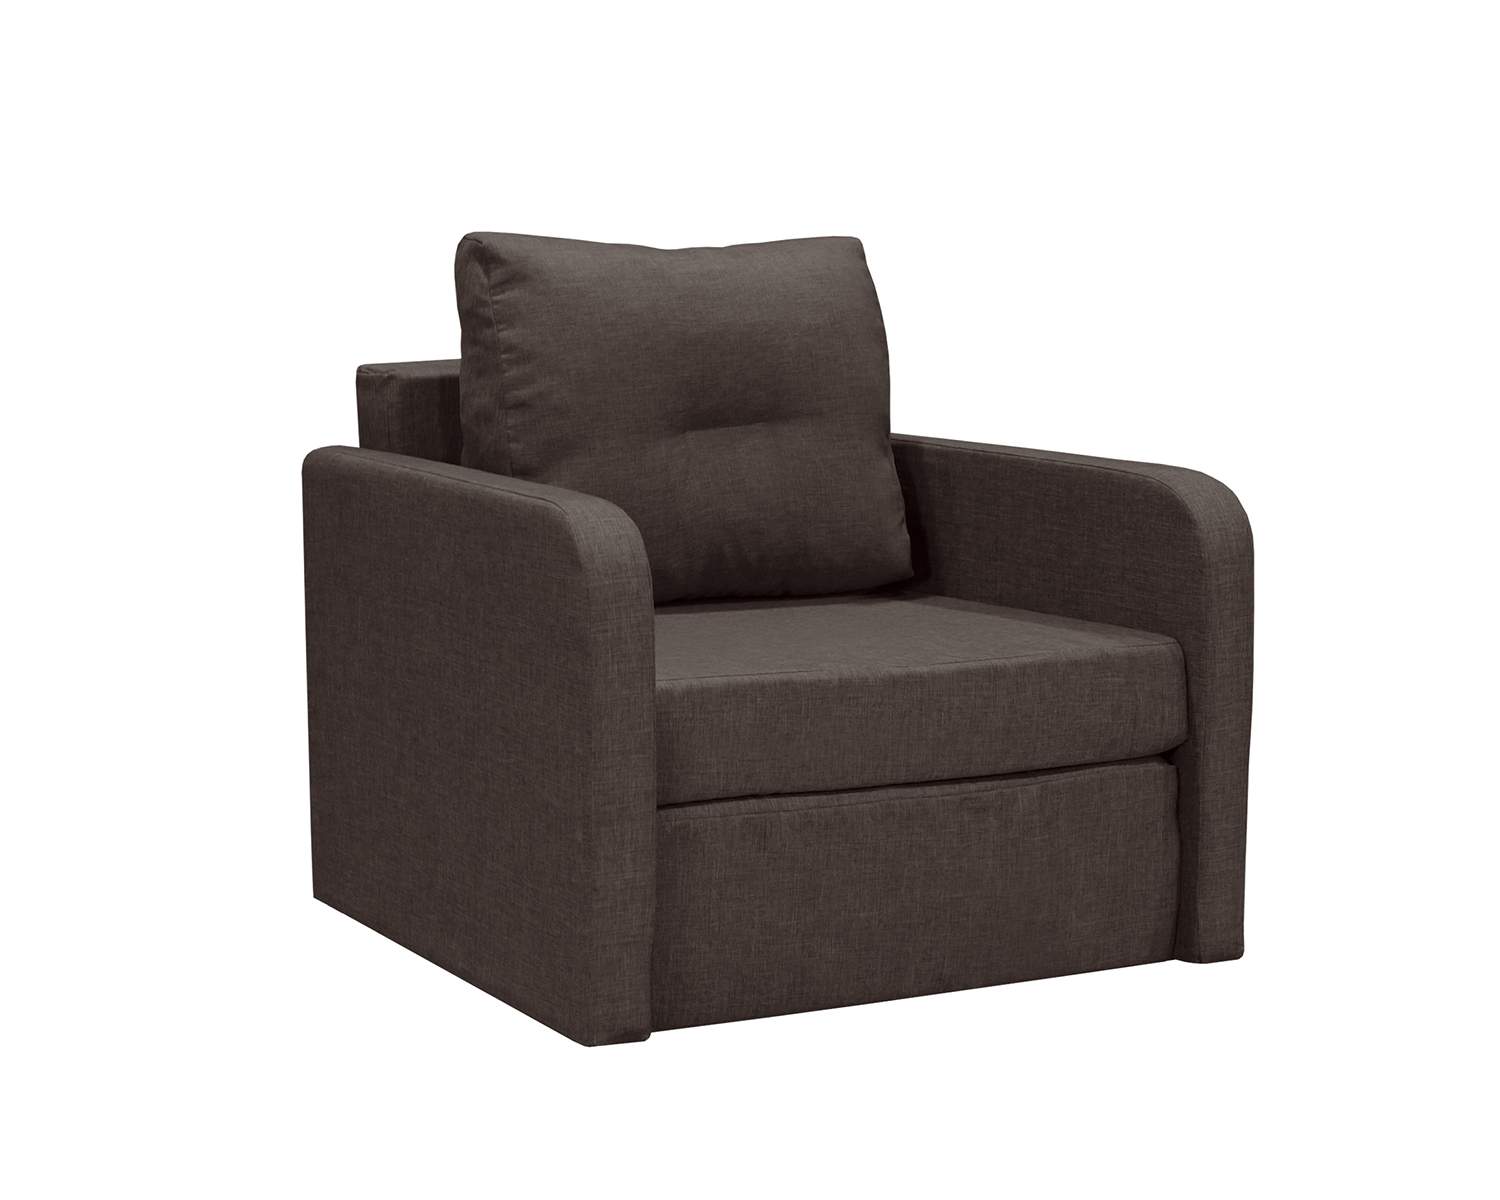 Кресло-кровать Бит-2 шоколад